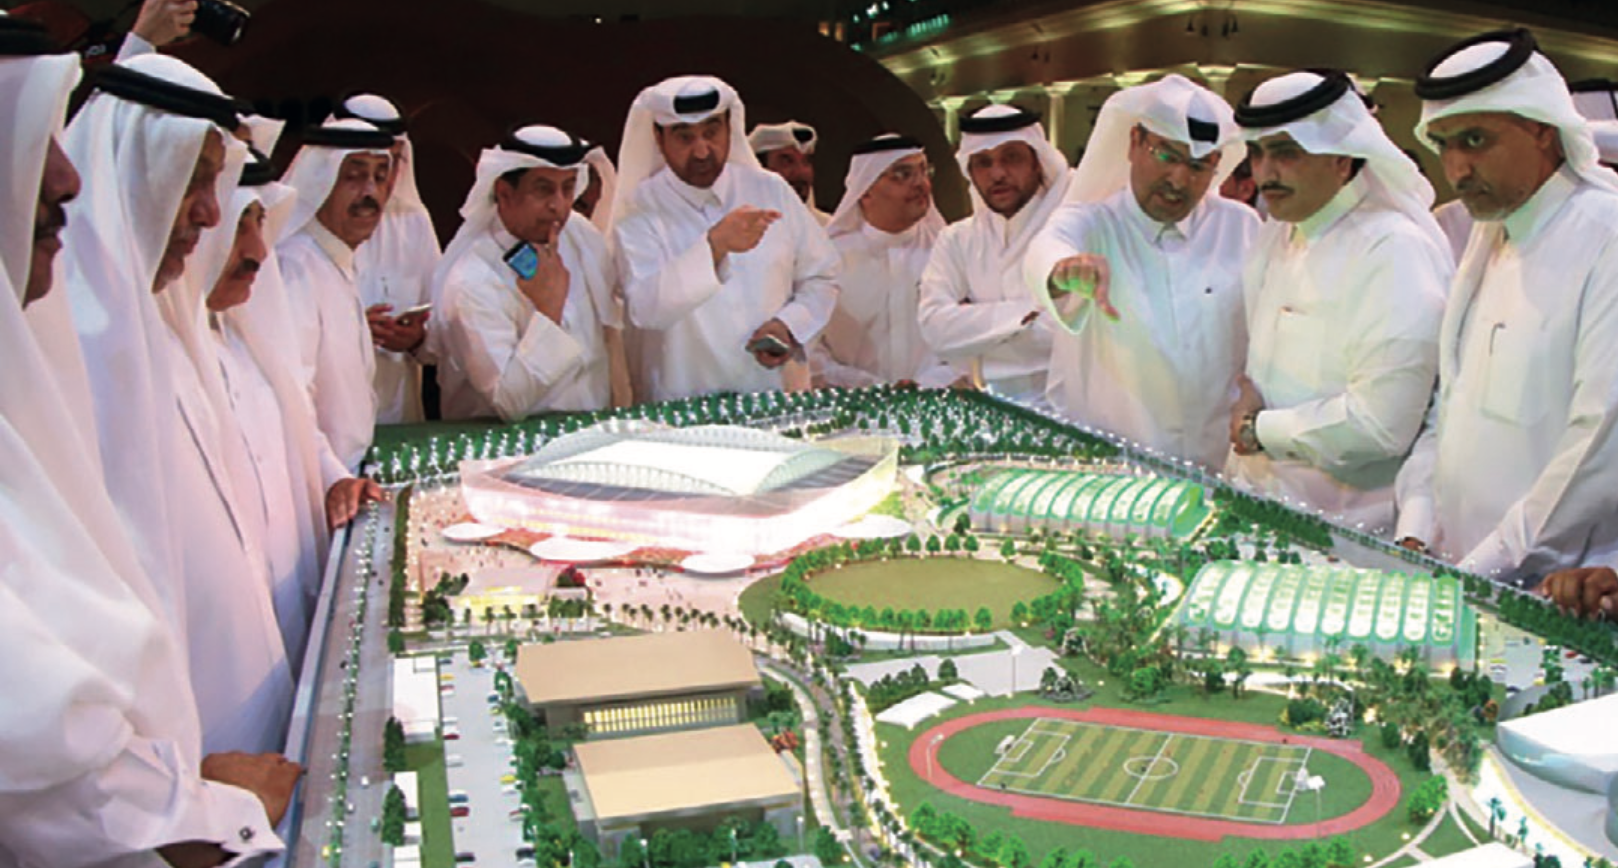 Mondiali super con tante emozioni e sorprese: ma il Qatar è un regime feudale